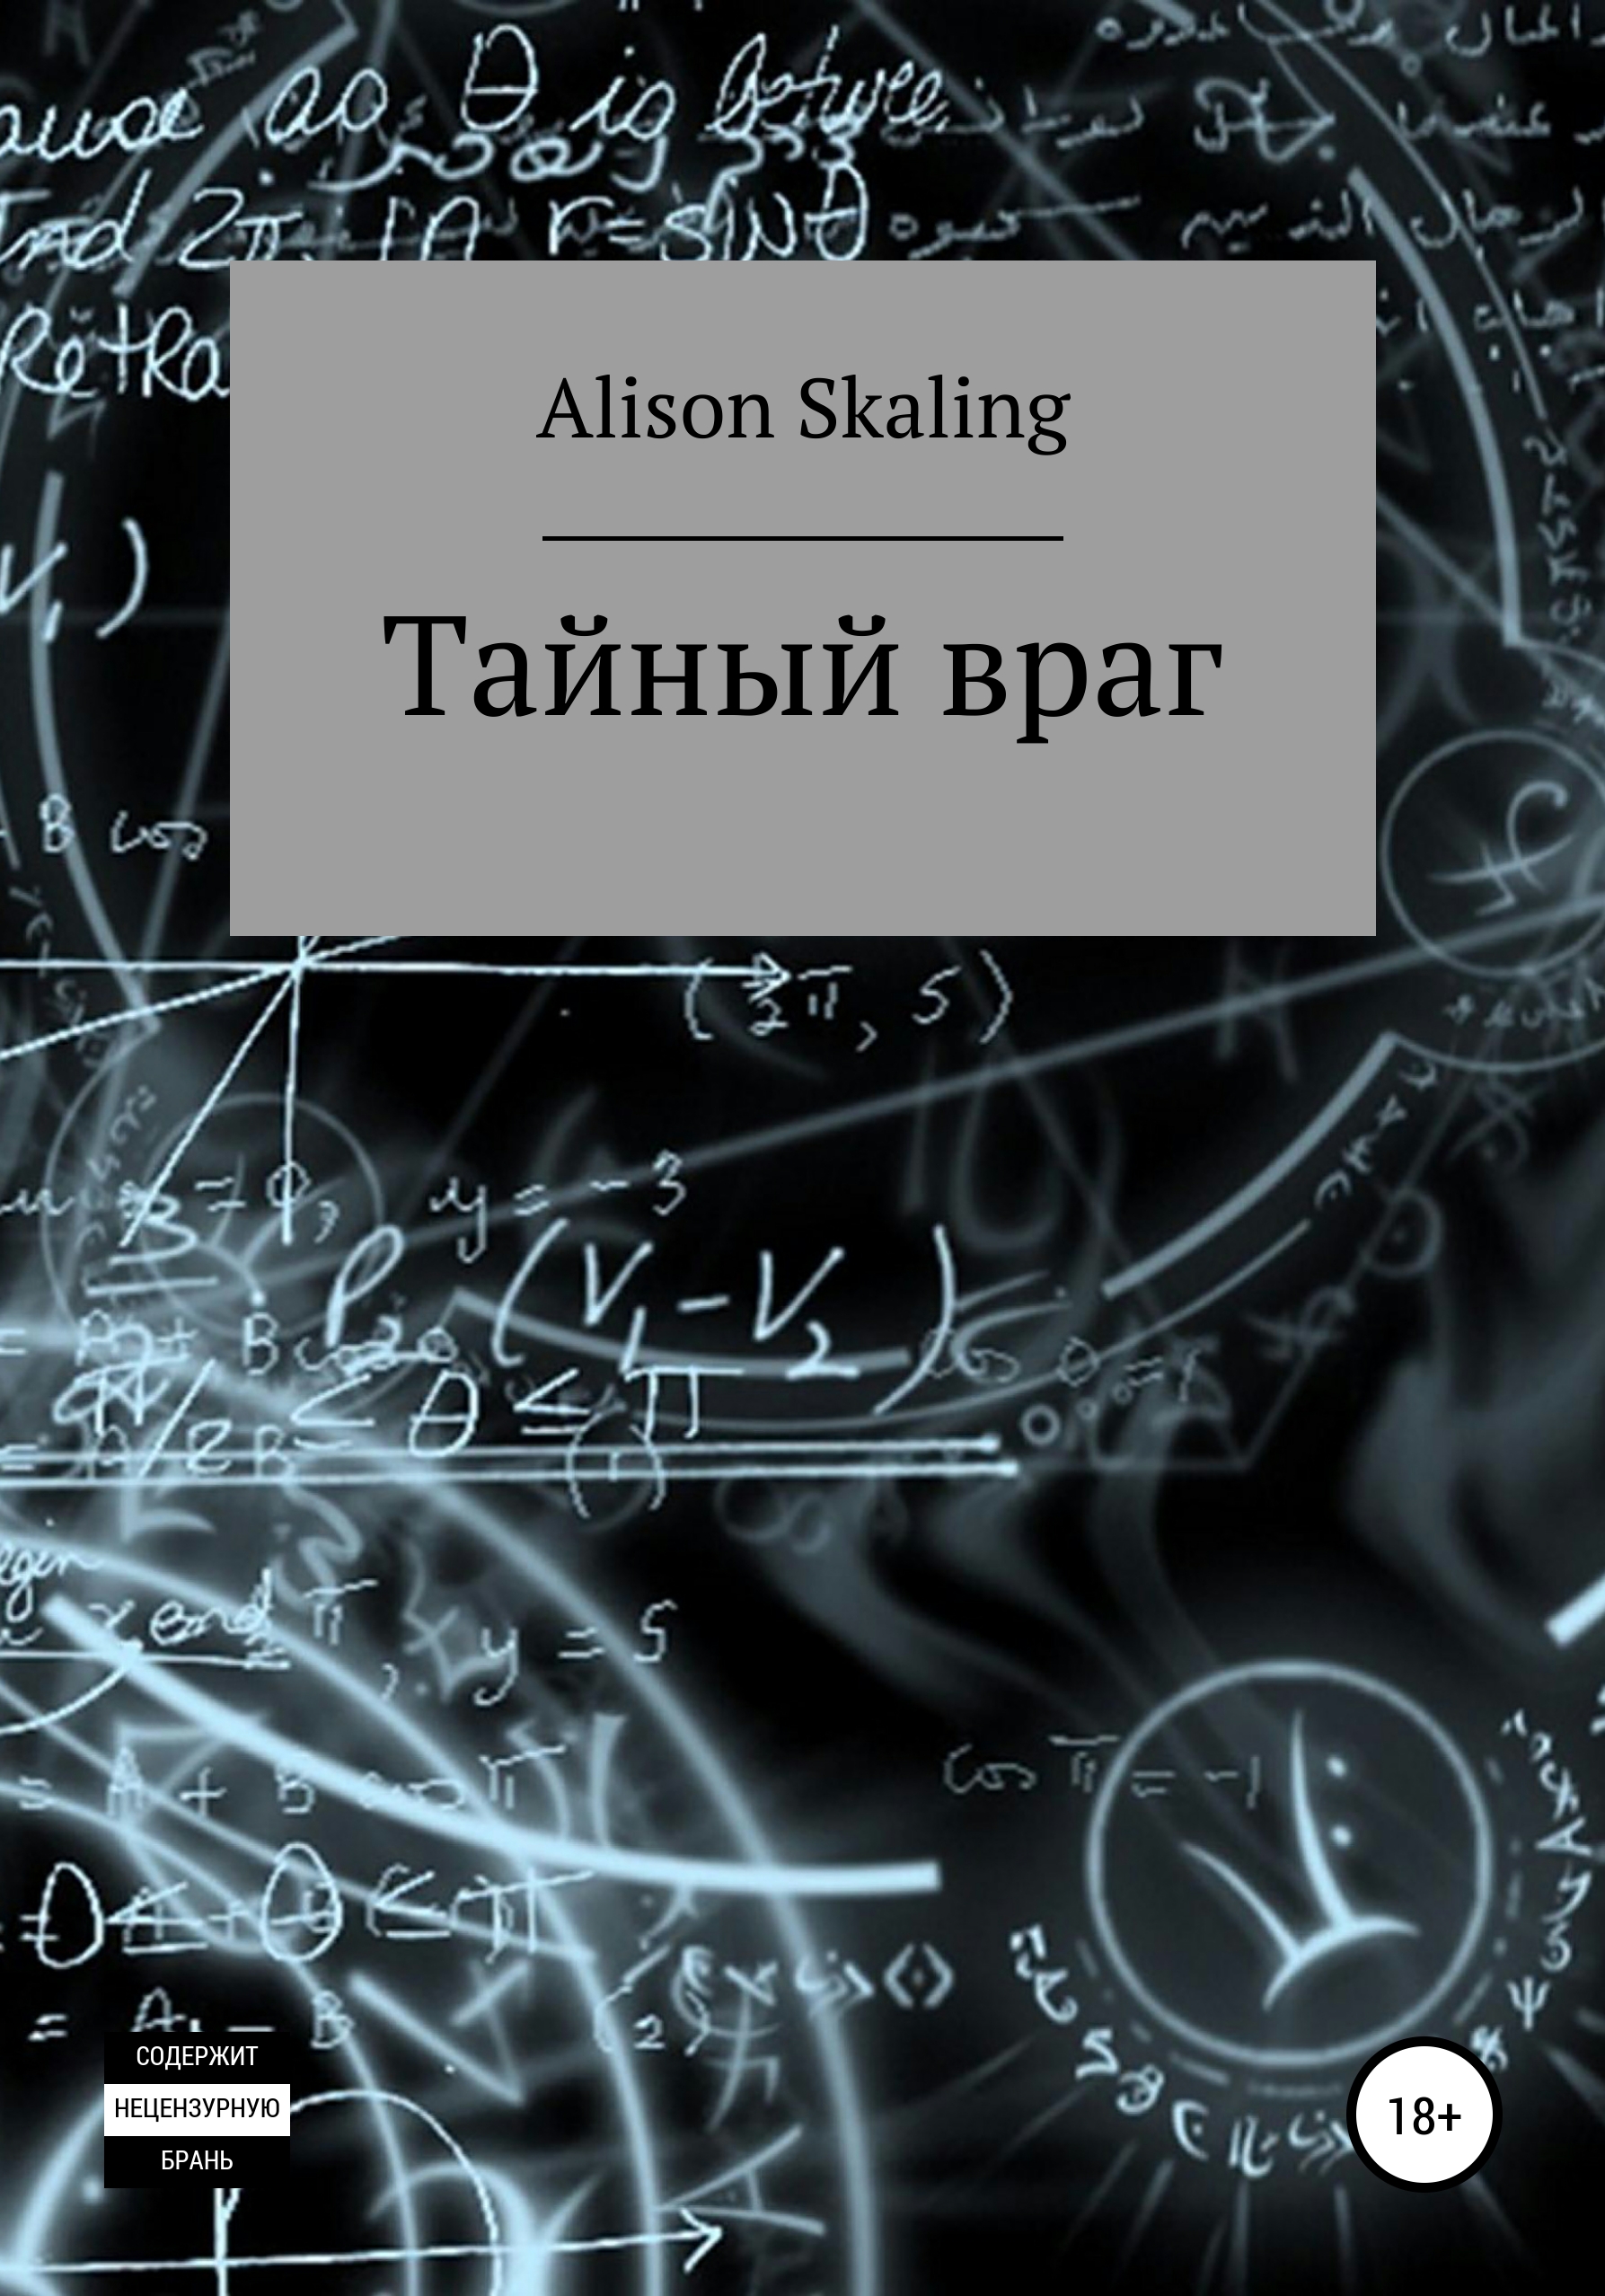 Тайный враг – Alison Skaling